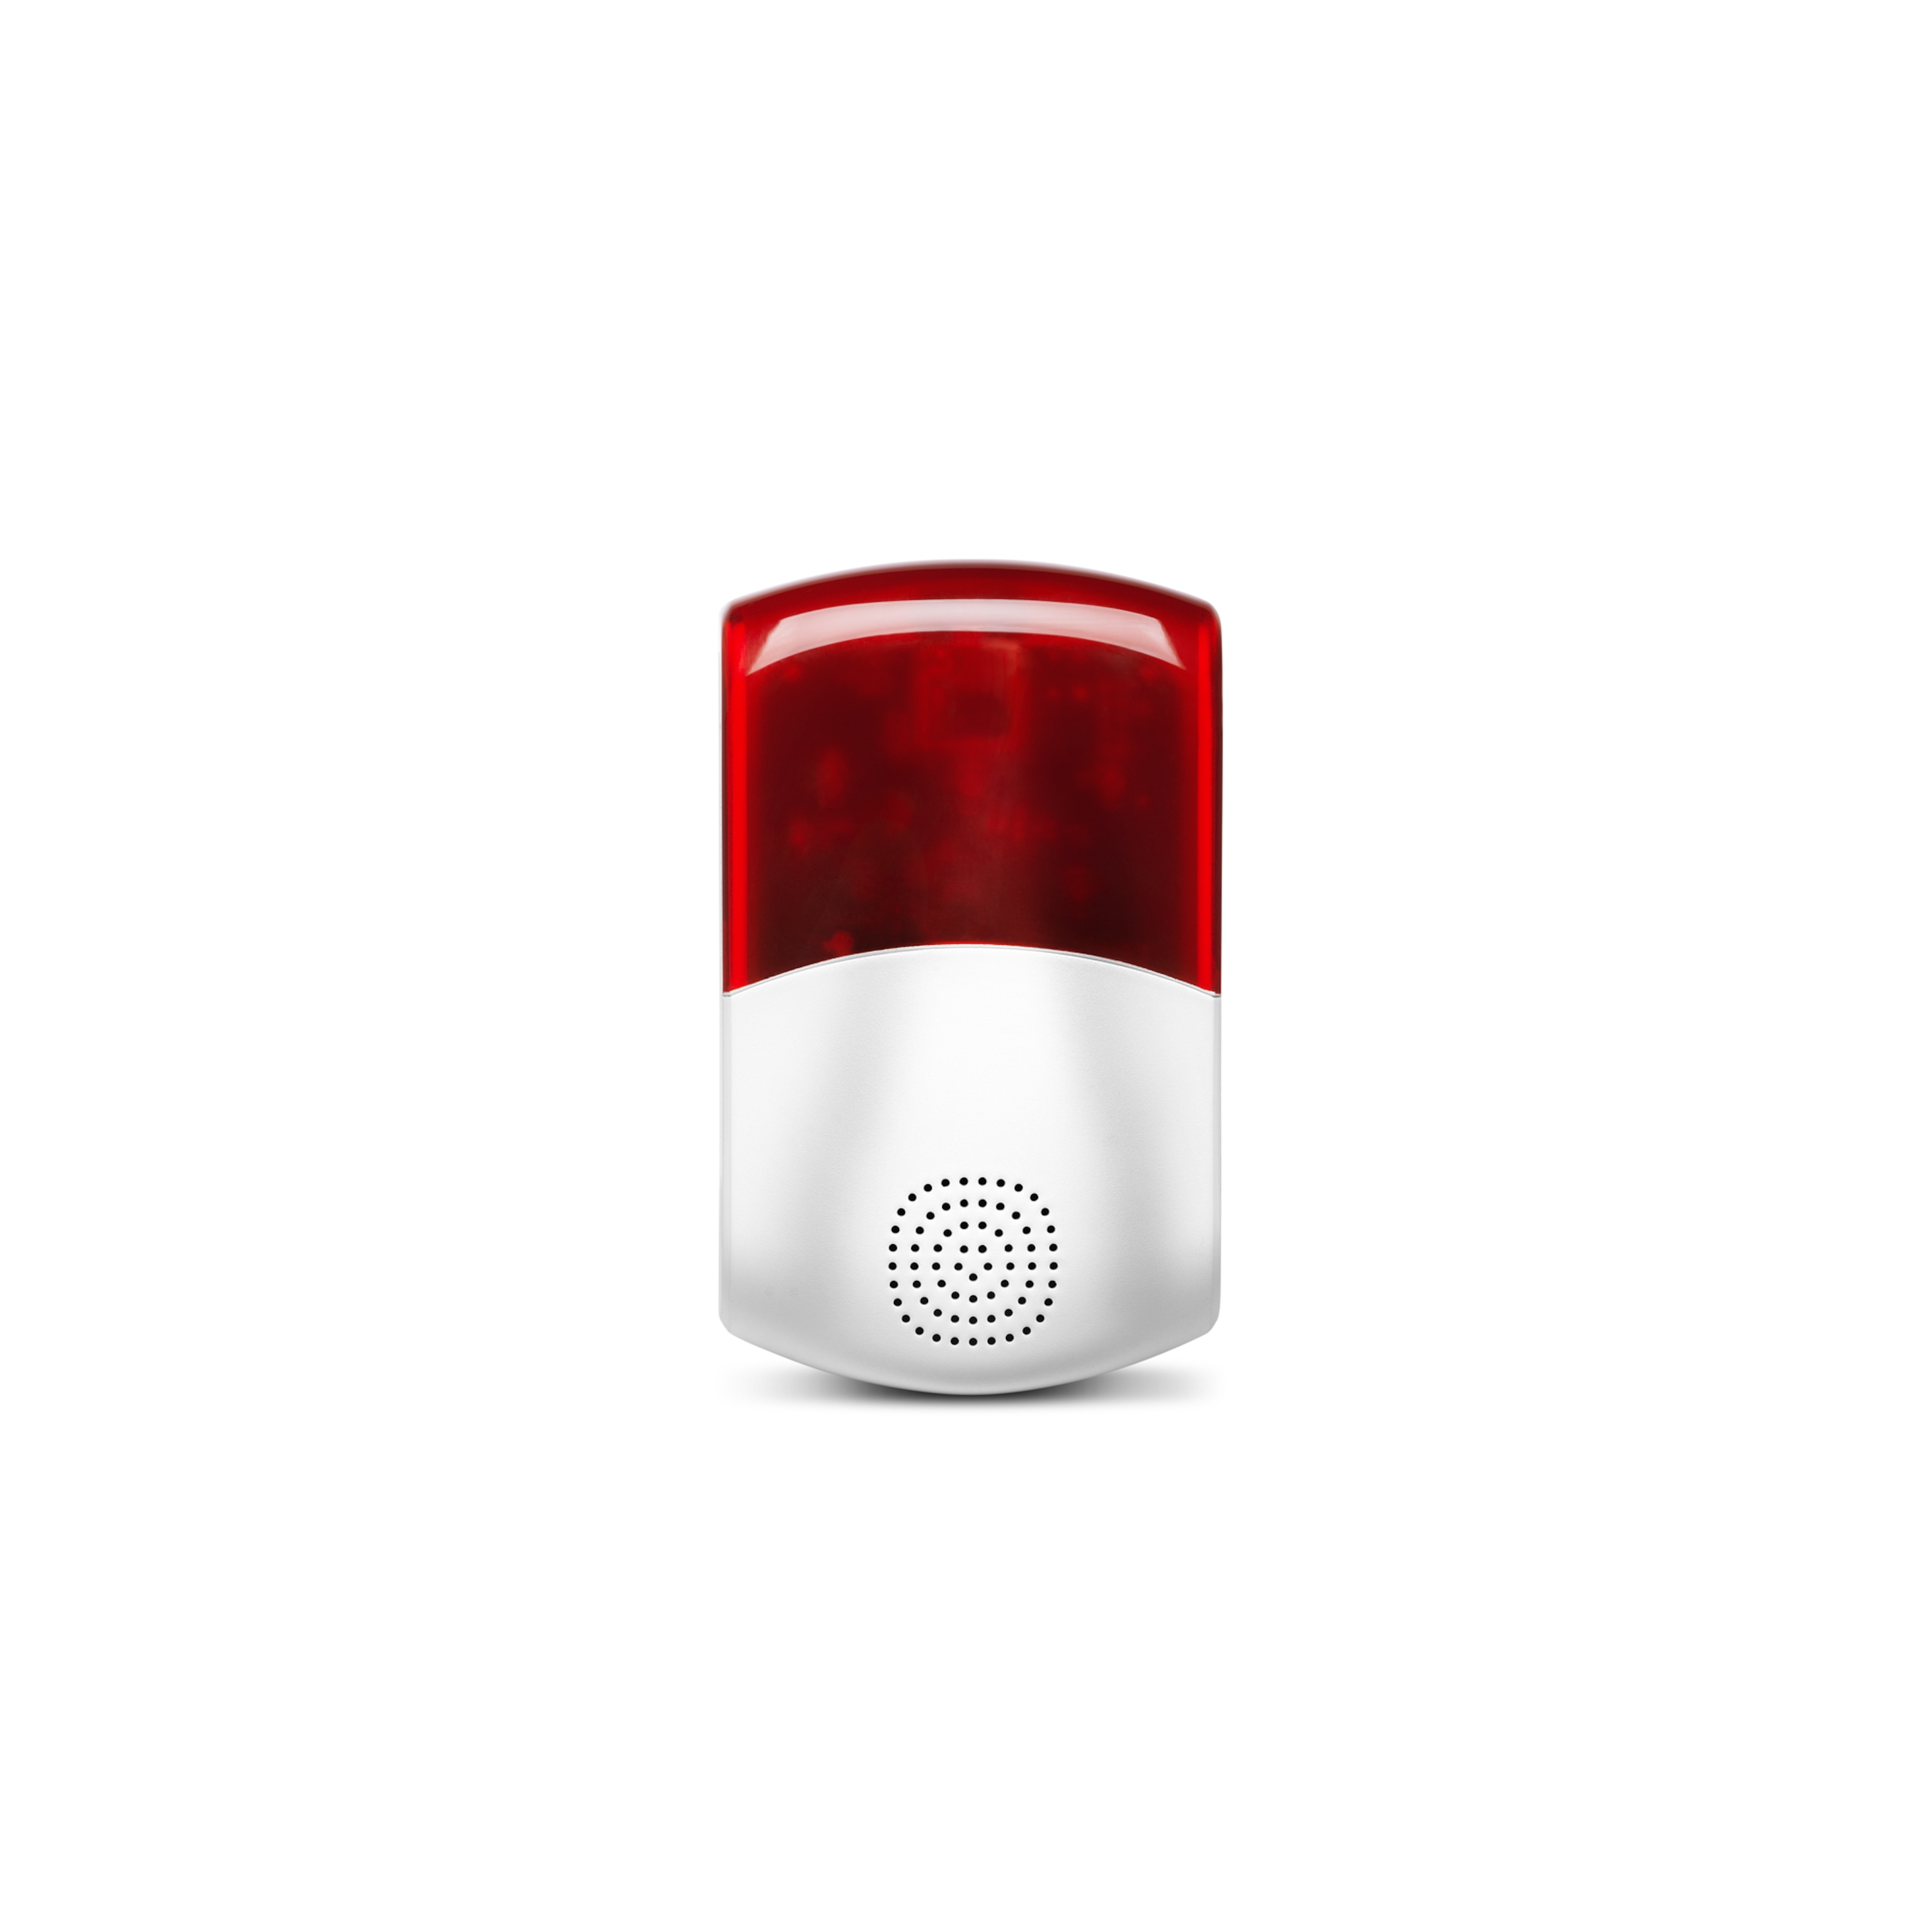 MEDION® Smart Home Alarmsystem Zentrale P85731 inkl. umfangreichem Zubehör - Artikelset 1.1